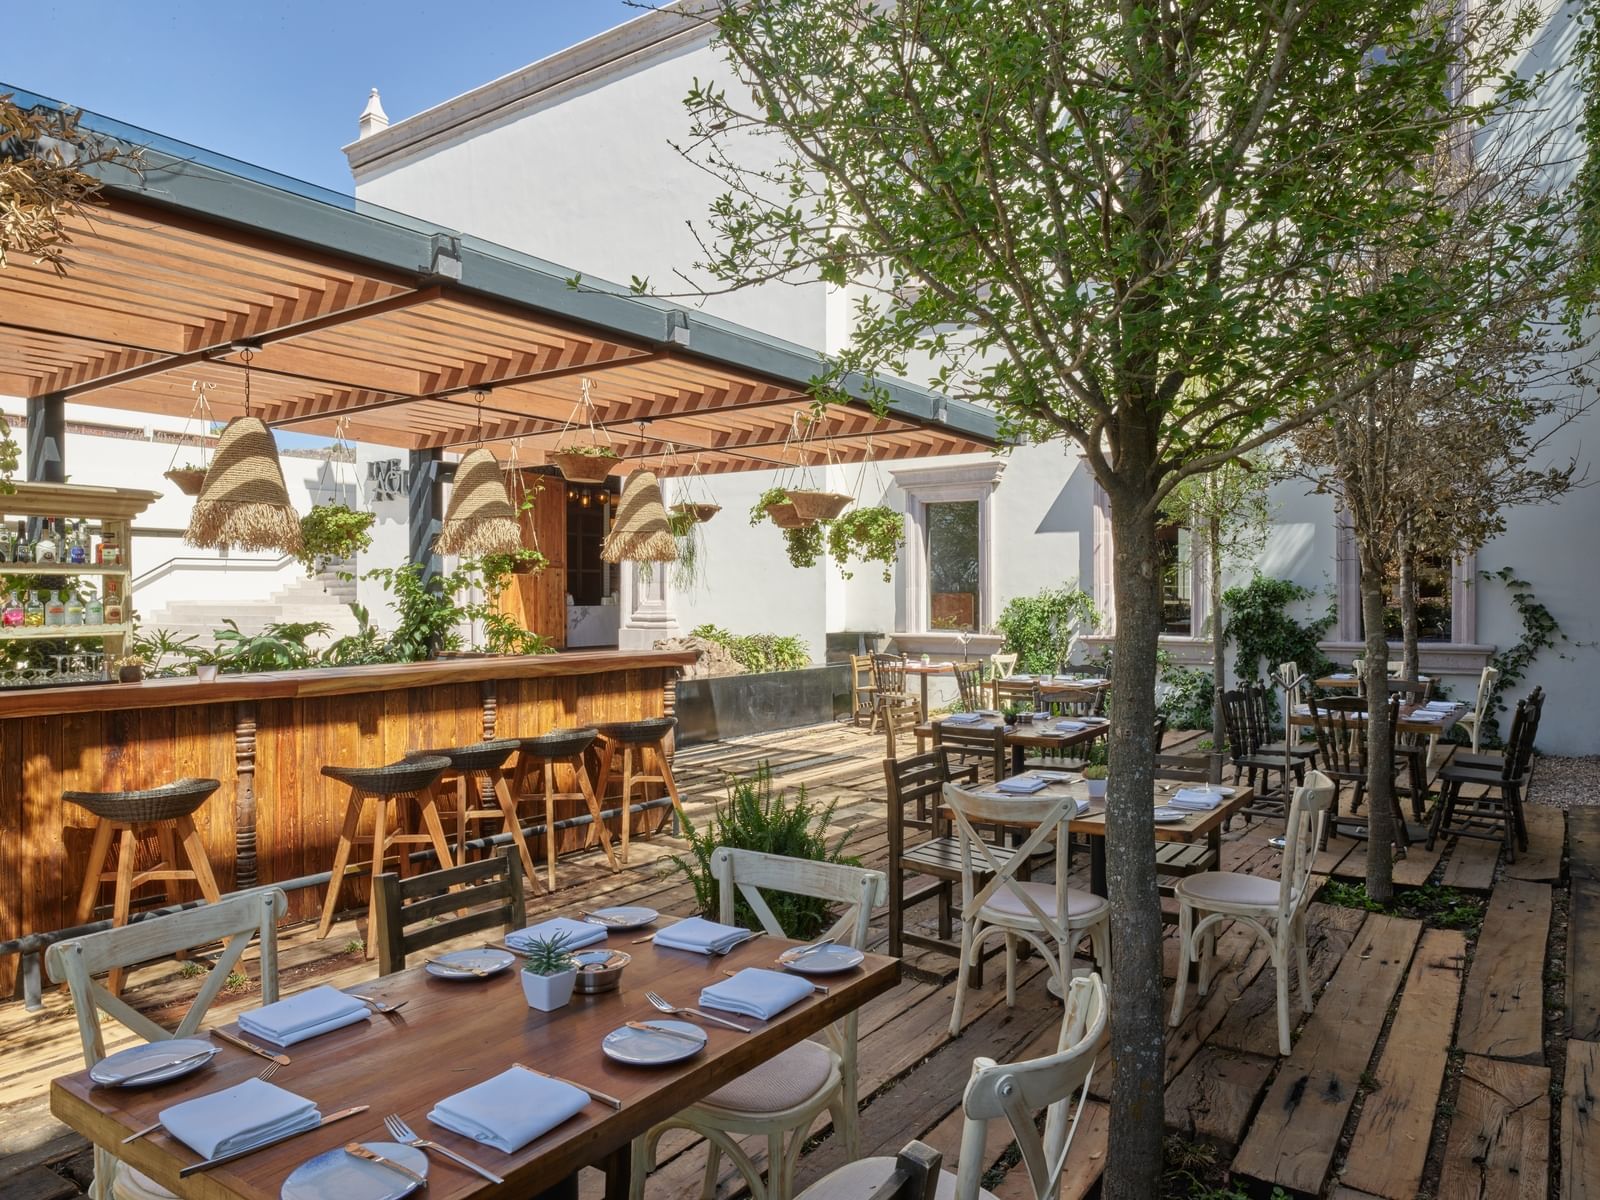 Zibu Allende restaurant dining area with tables at La Colección